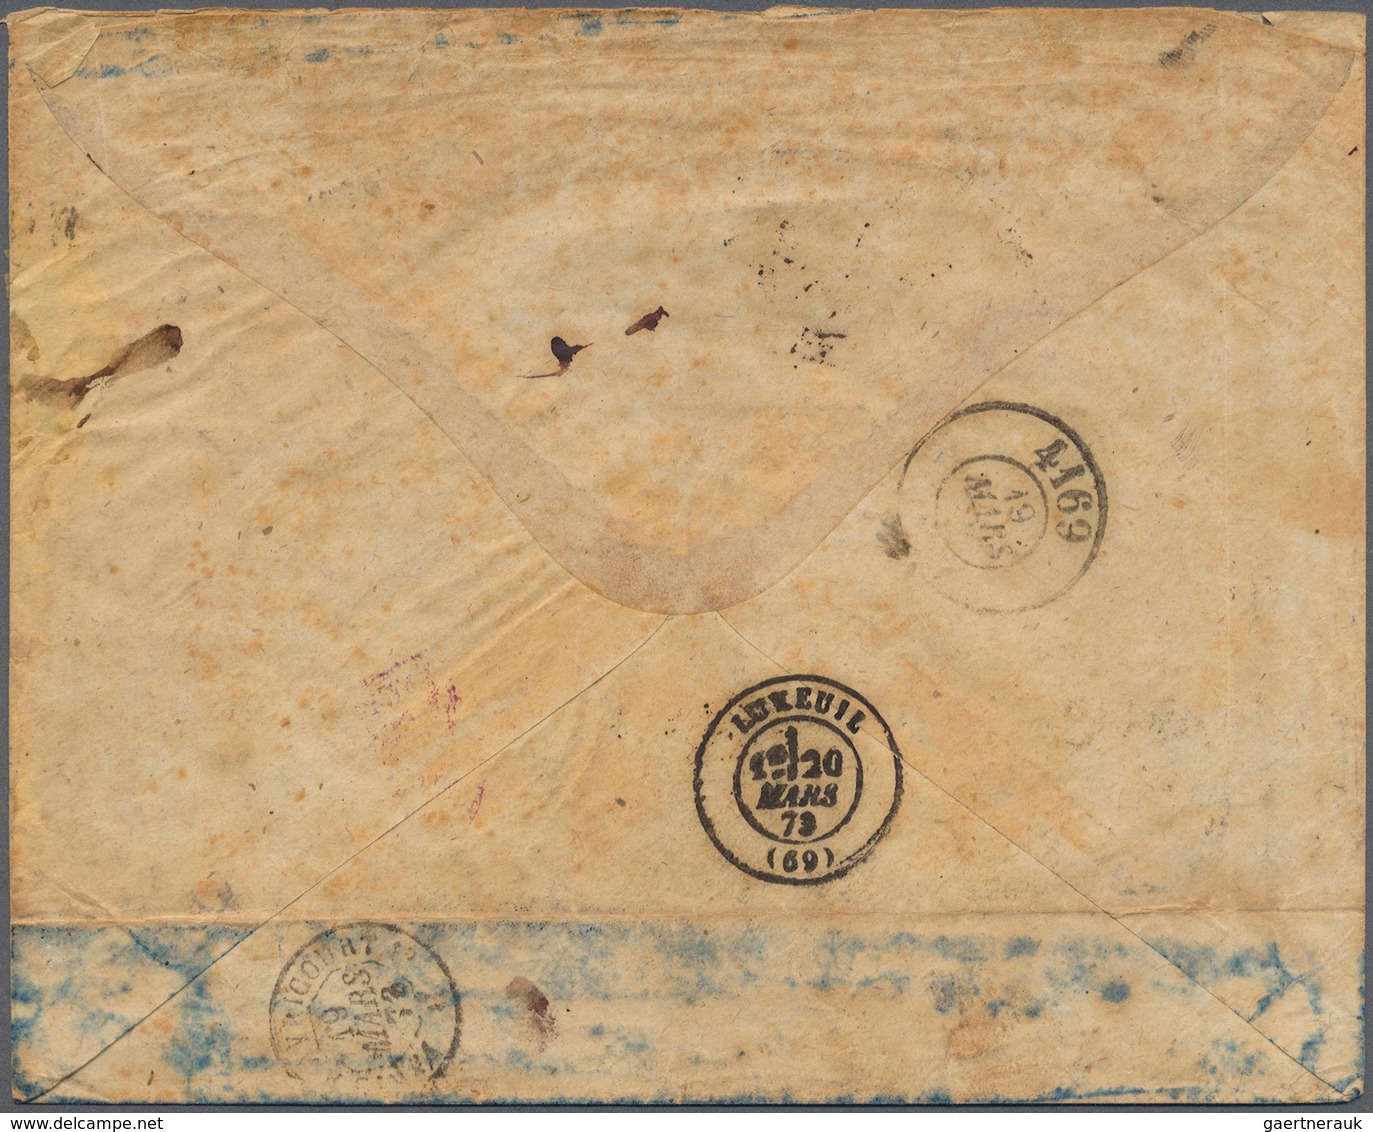 Deutsches Reich - Brustschild: 1873. Eingeschriebener Brief Der Firma "Zickenheimer, Mainz, Fabrik D - Unused Stamps